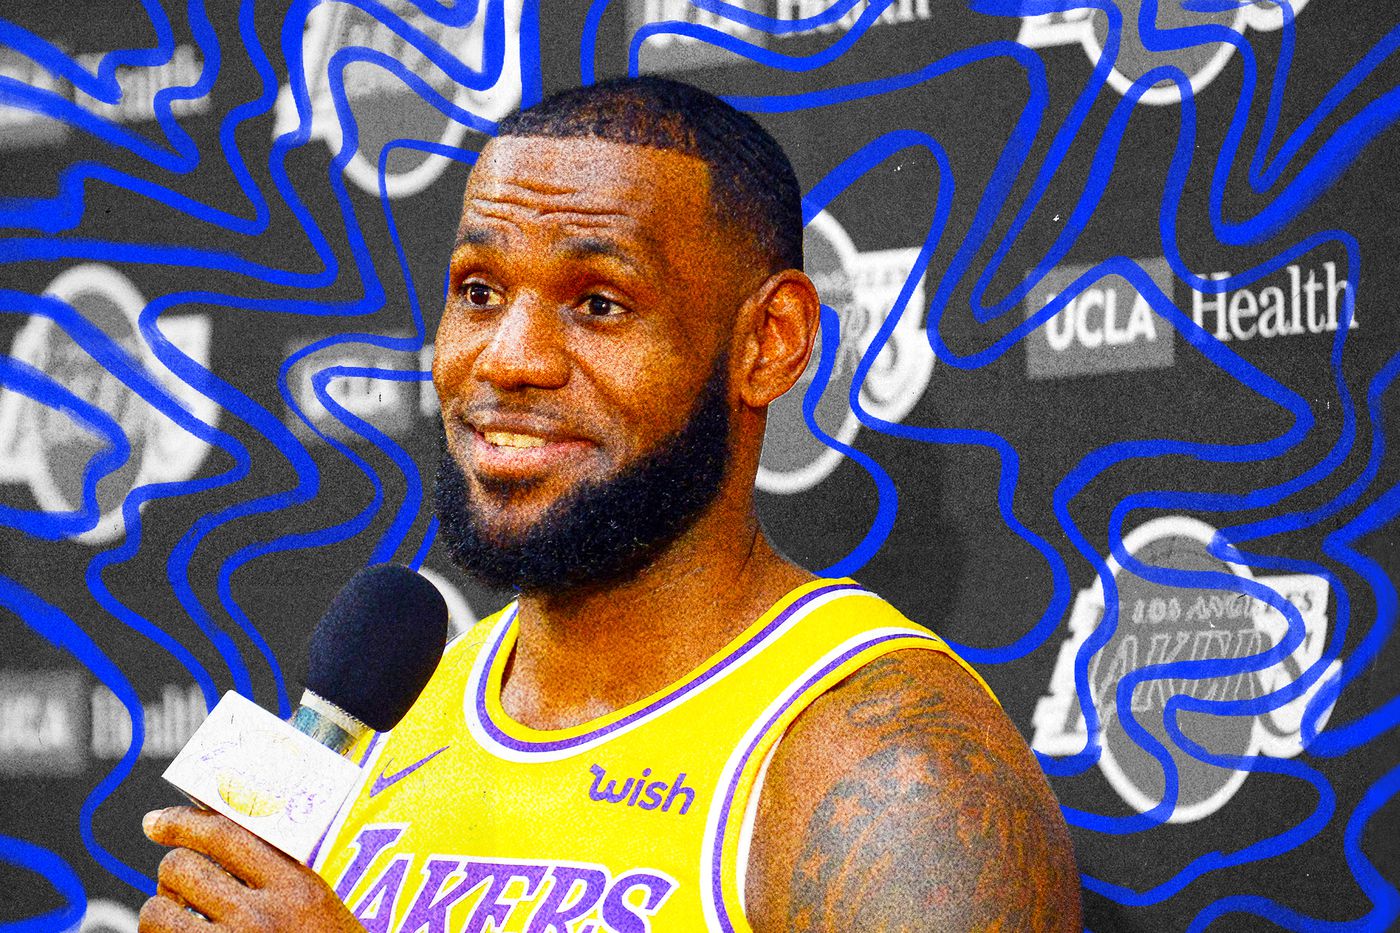 Tương lai bất định của LeBron James với Los Angeles Lakers xung quanh loạt tin đồn chuyển nhượng - Ảnh 4.